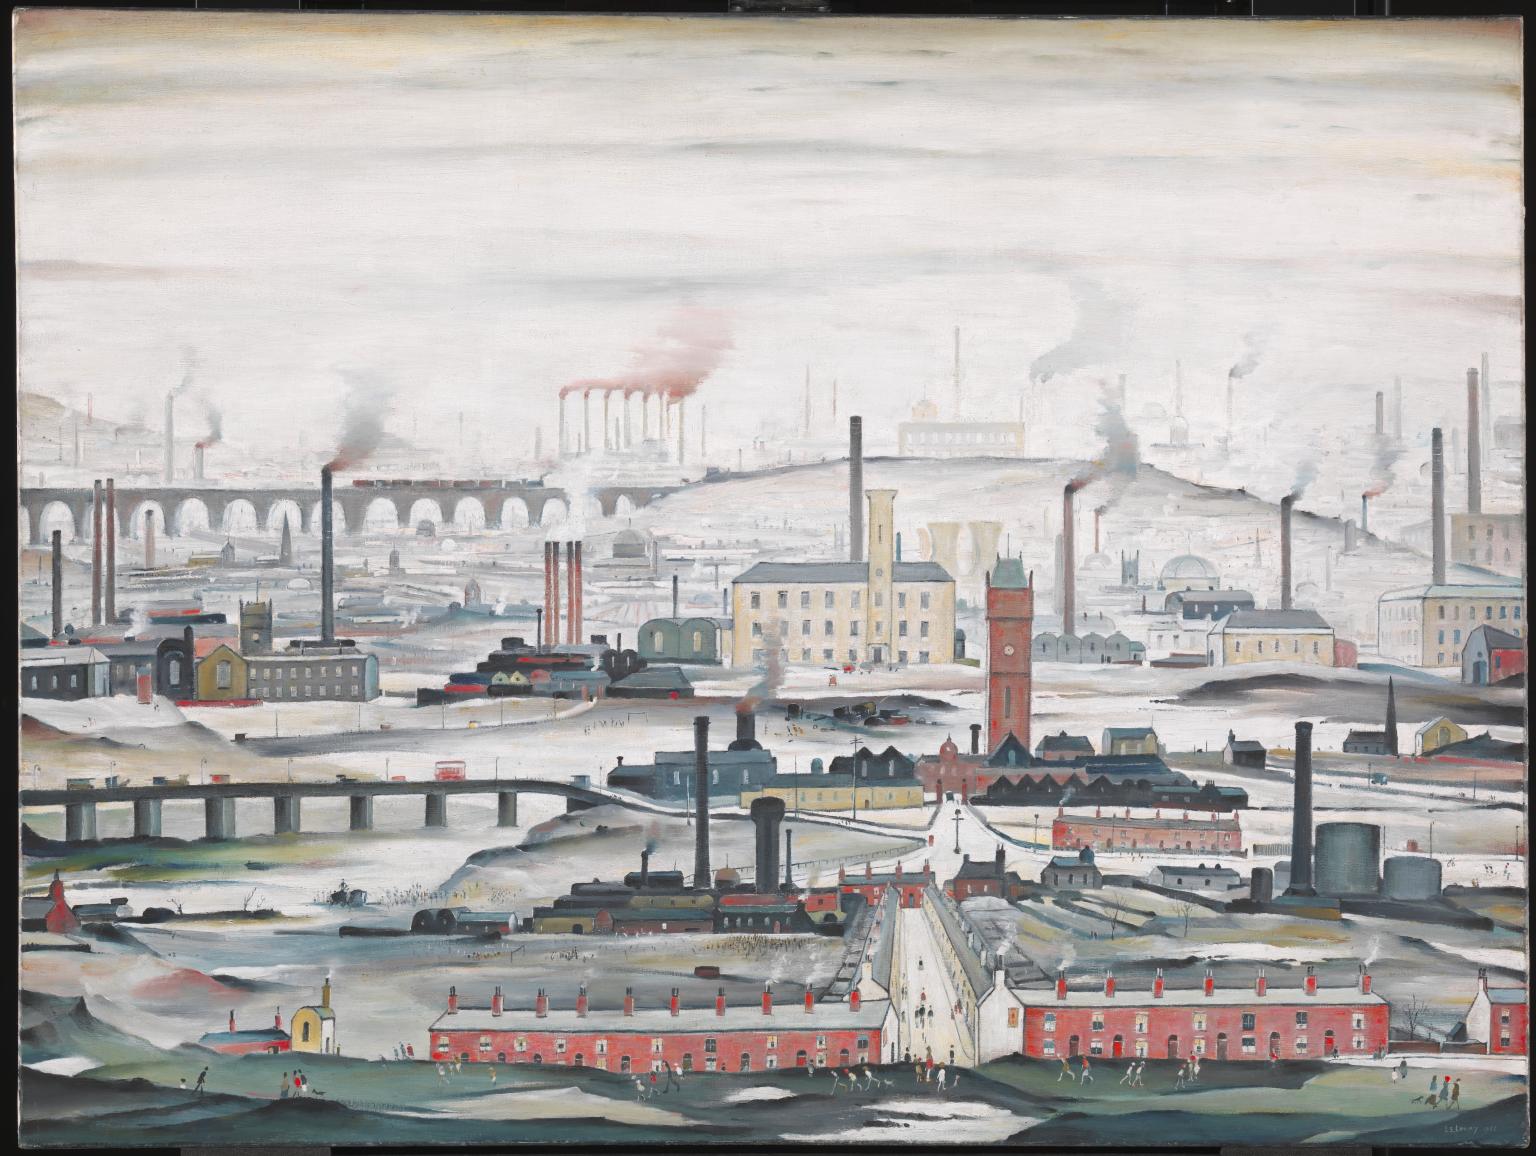 'Pejzaż przemysłowy' (1955) - powszechnie uznawany za najbardziej znany temat w malarstwie i grafice Lowry'ego